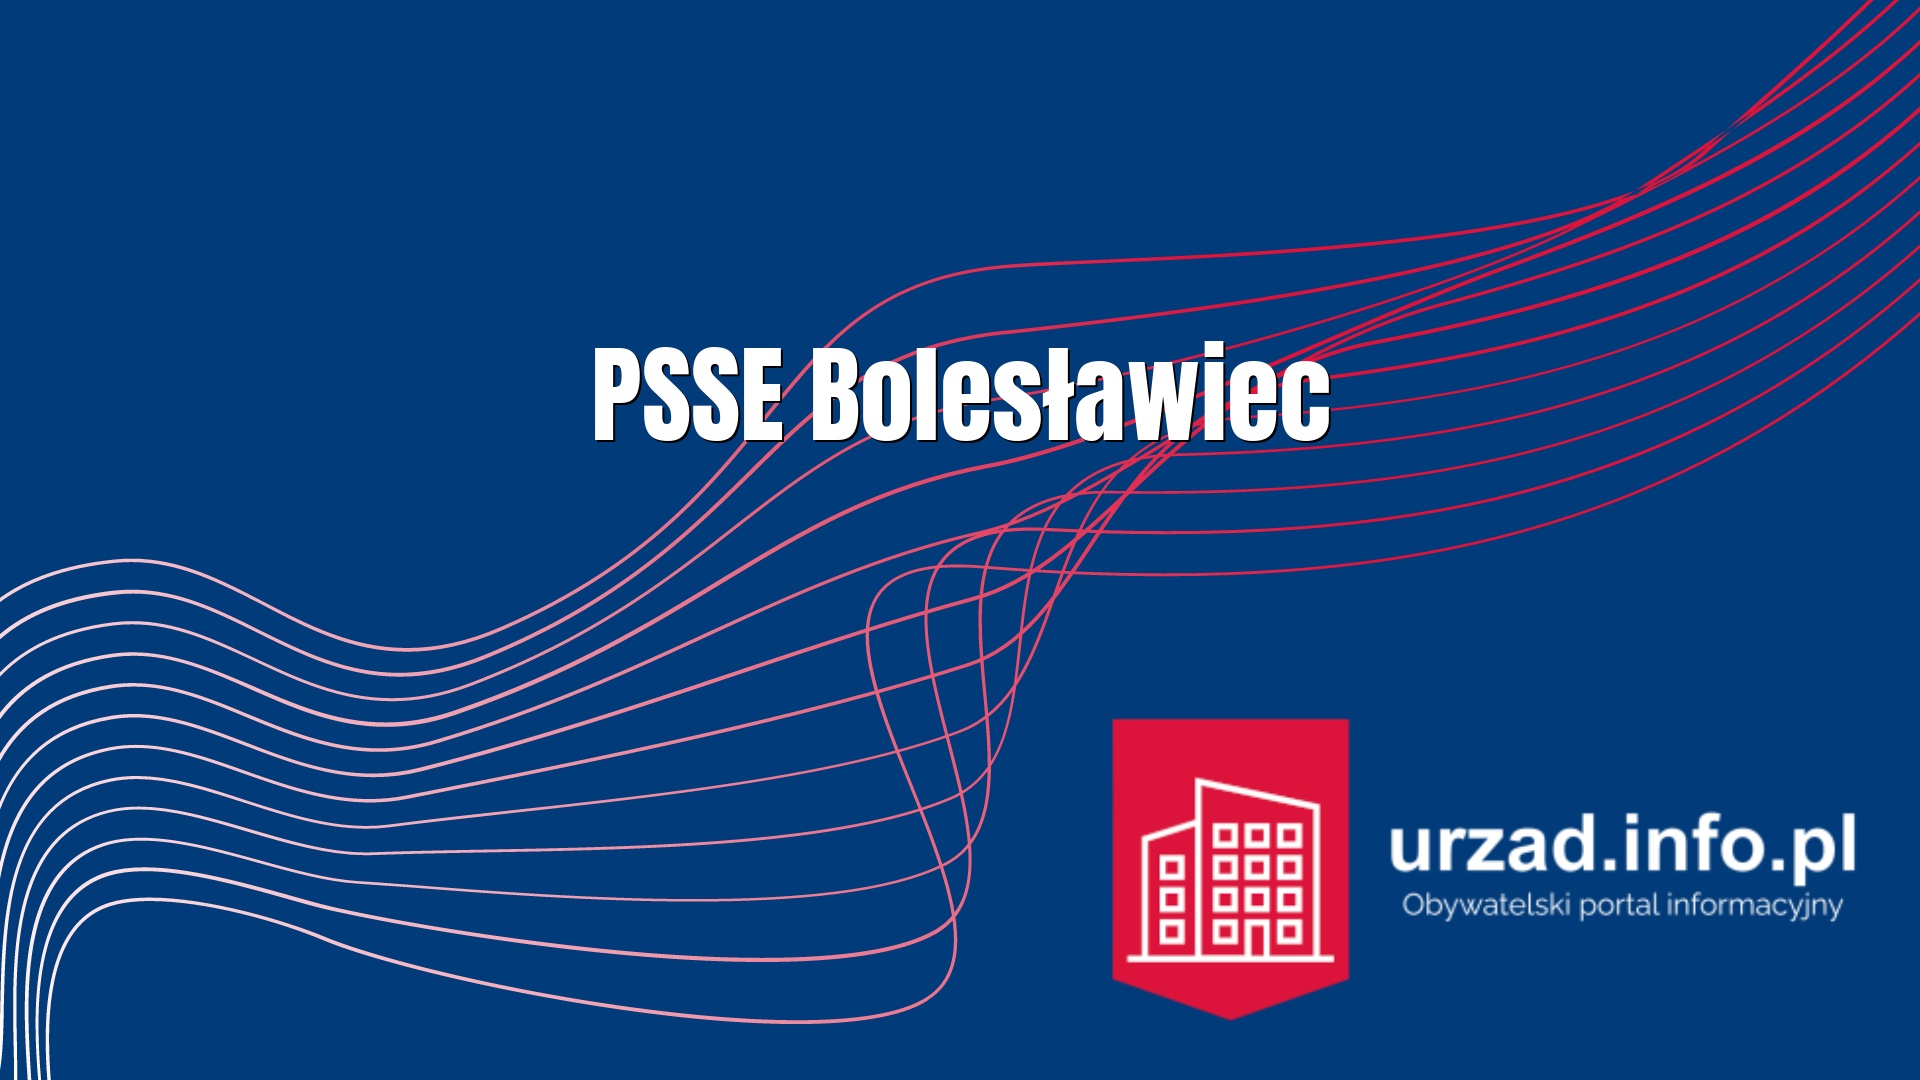 PSSE Bolesławiec